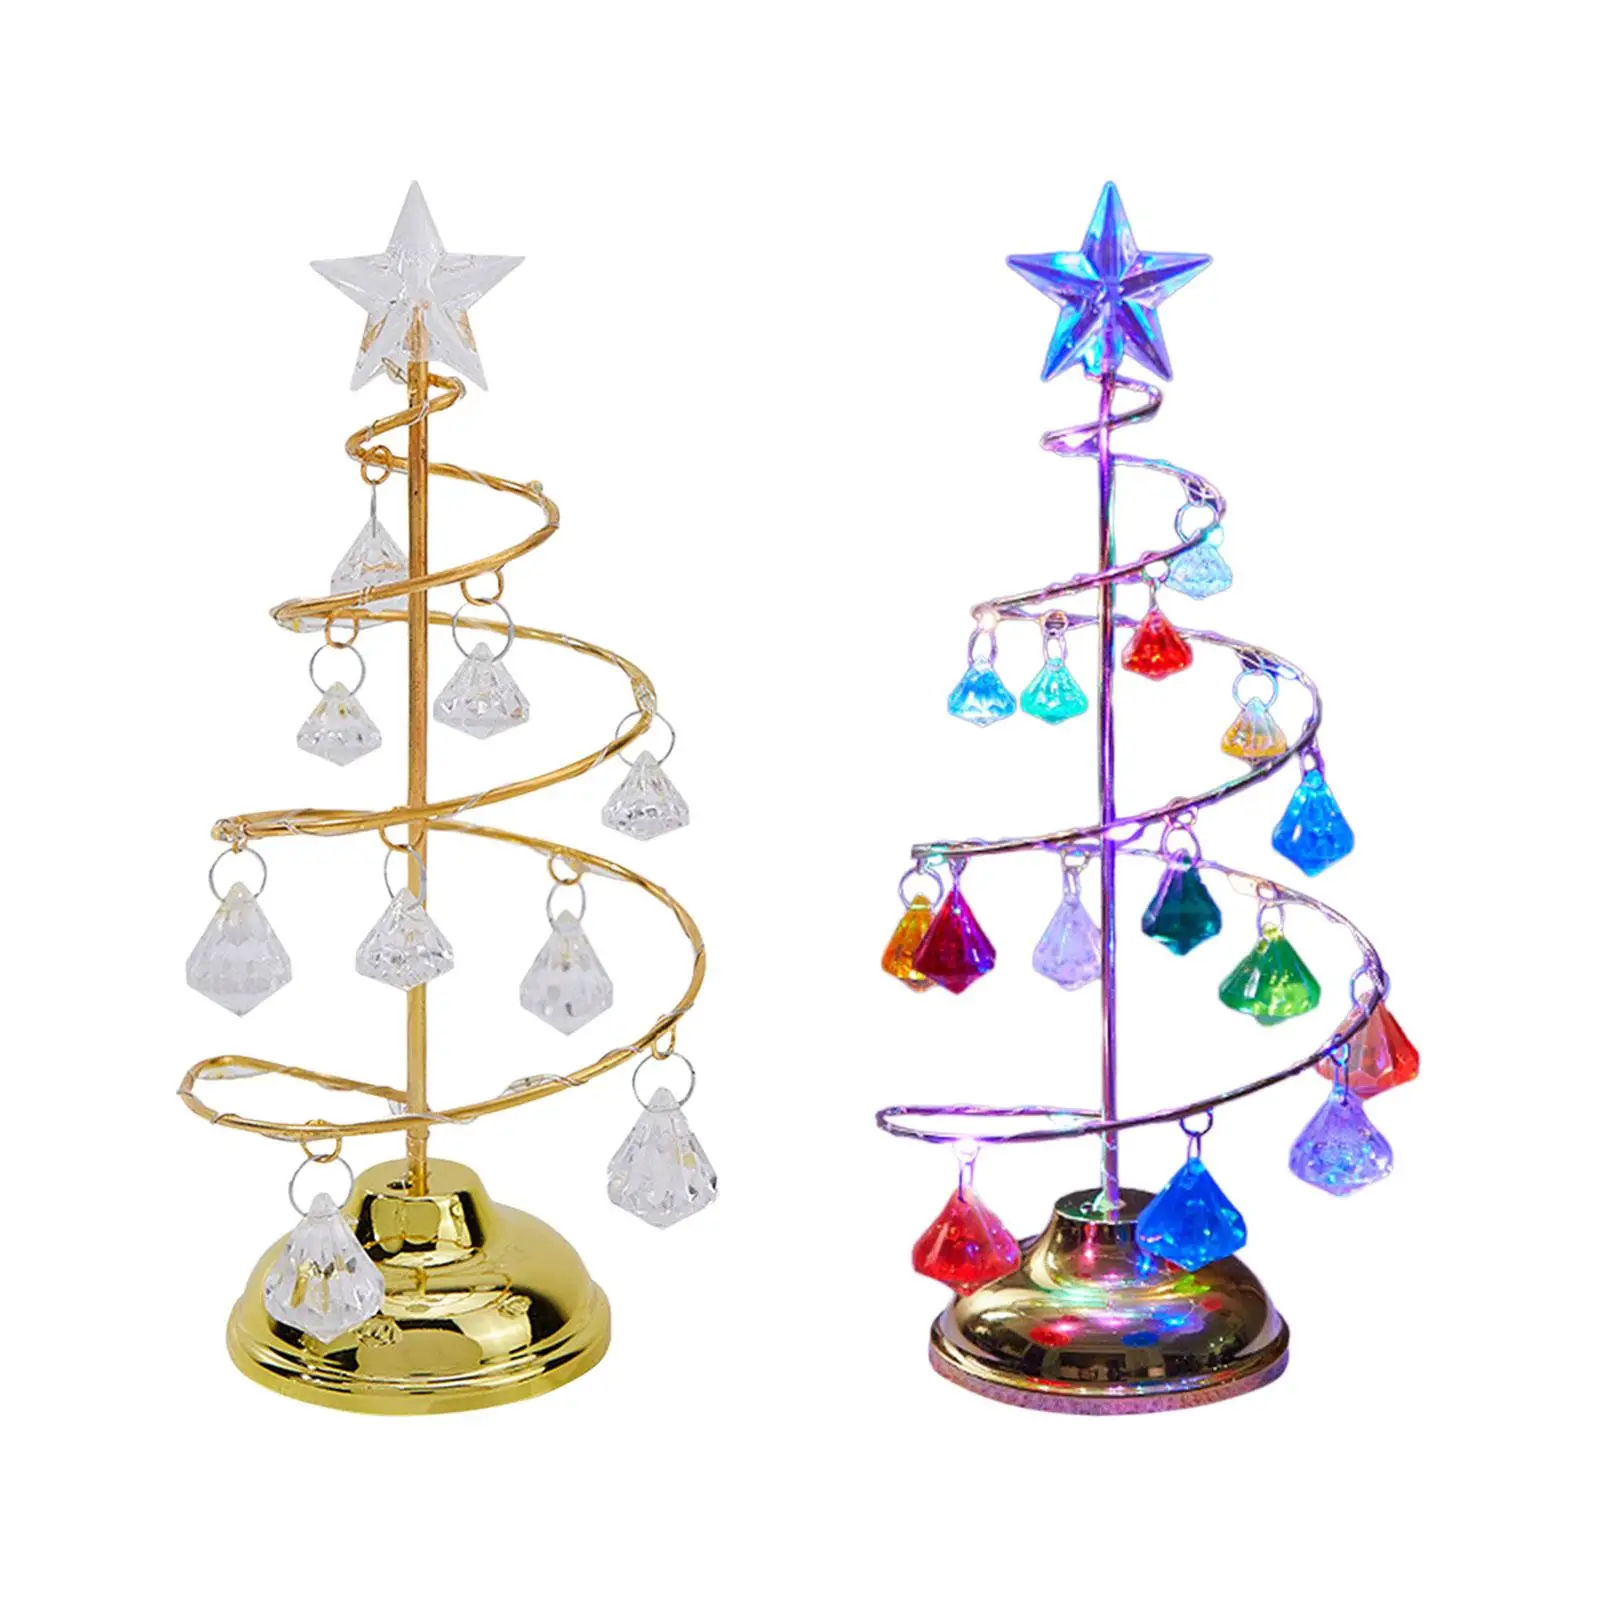 Crystal Spiral Christmas Tree Lamp Christmas Tree Light with Metal Stand Acrylic Balls for Wedding Tabletop Winter Home Xmas